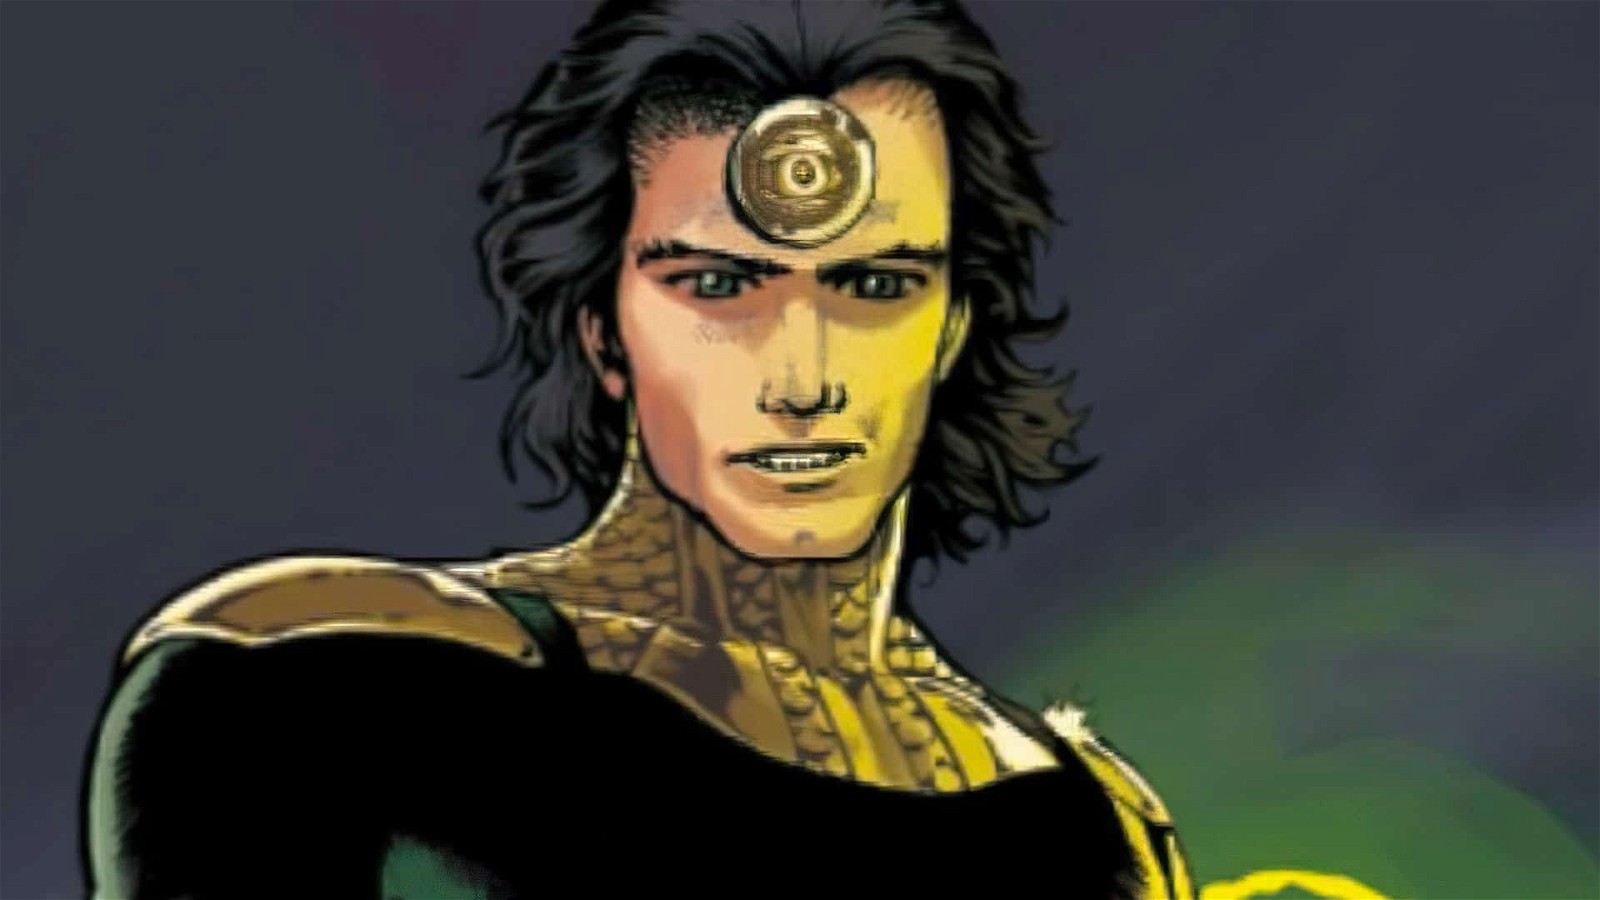 Avenger Prime Loki variant in Marvel Comics